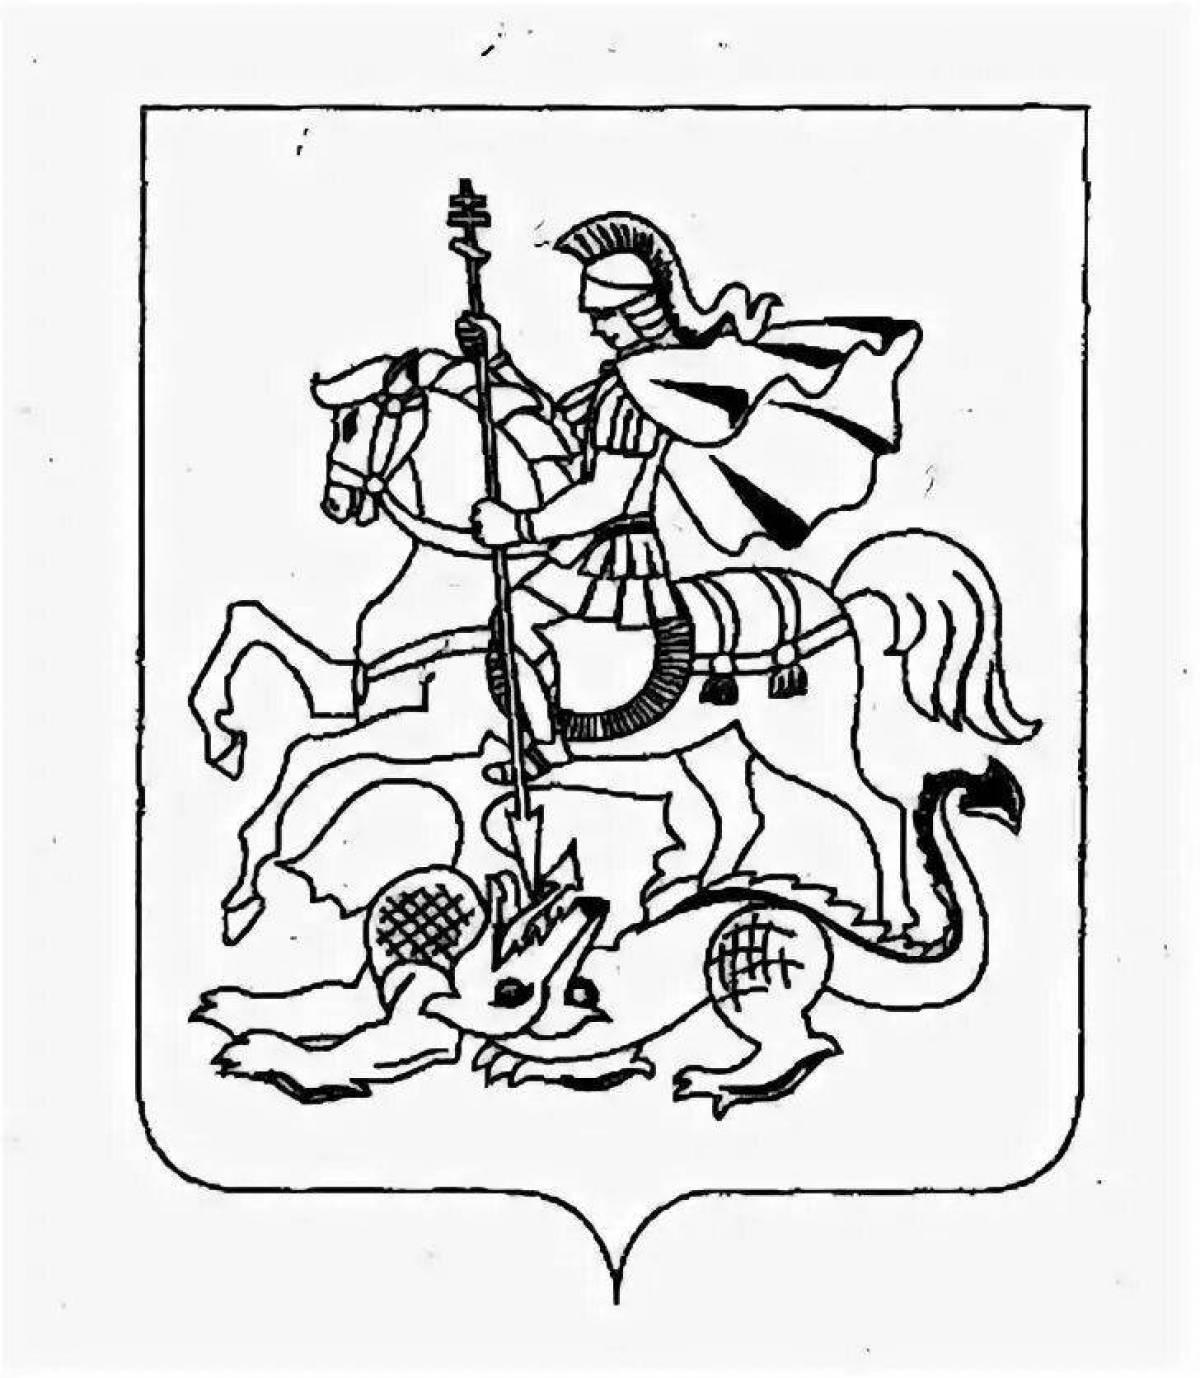 герб и флаг московской области картинки